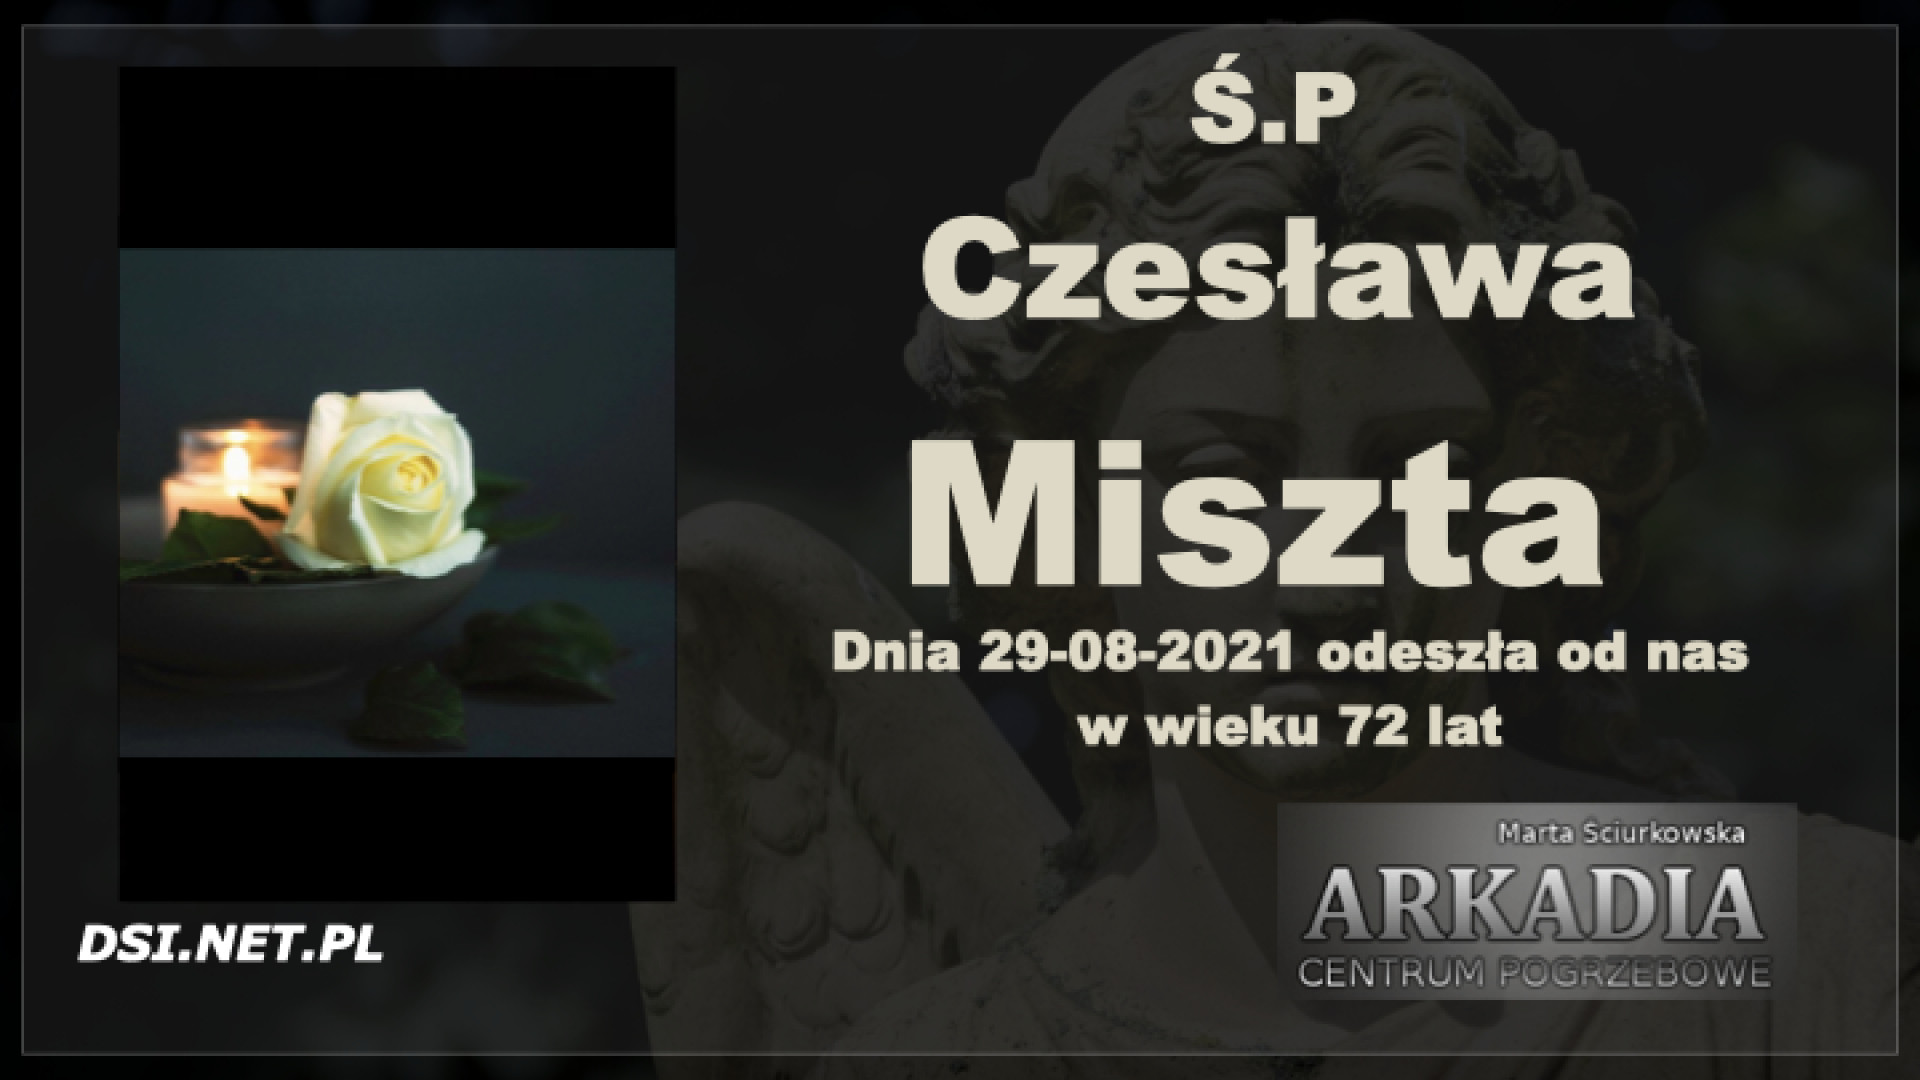 Ś.P. Czesława Miszta